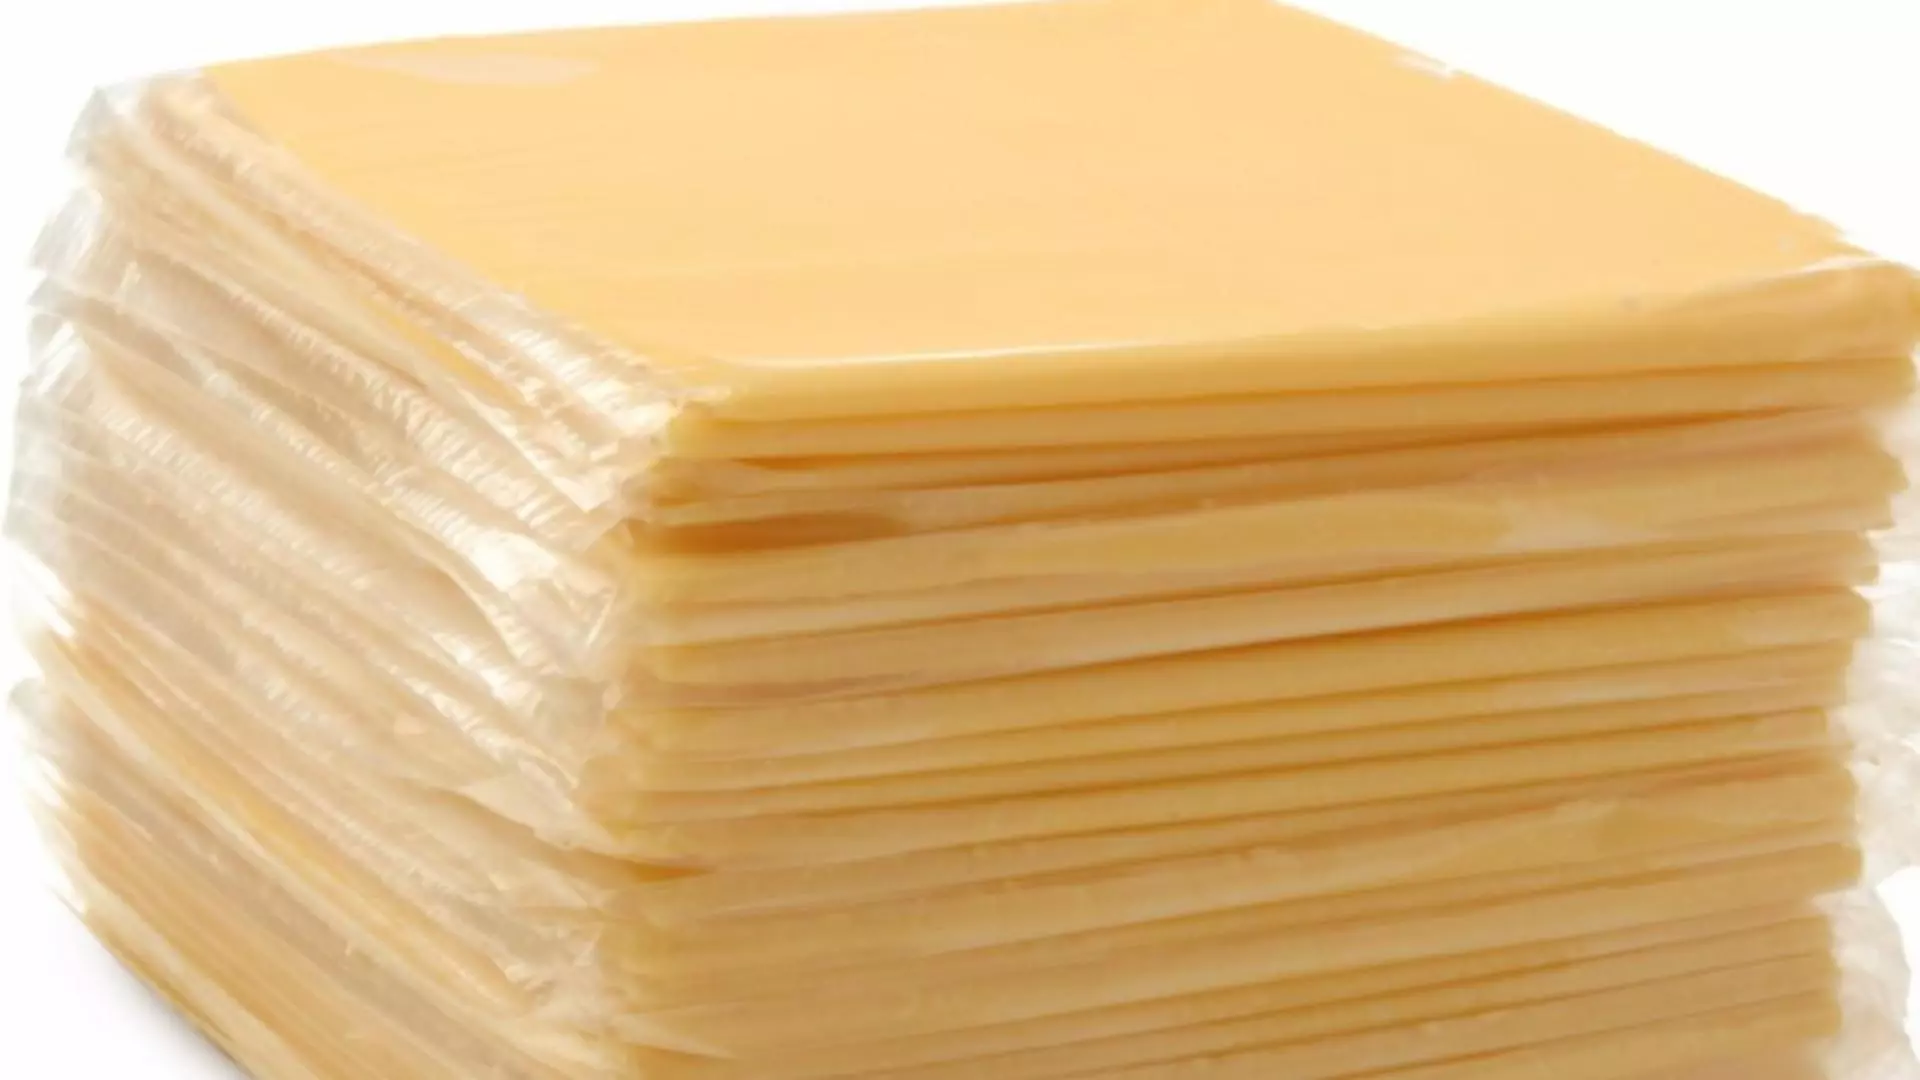 VIDEO - Adevărul șocant despre feliile de brânză topită. Câtă OTRAVĂ conțin, de fapt, acestea